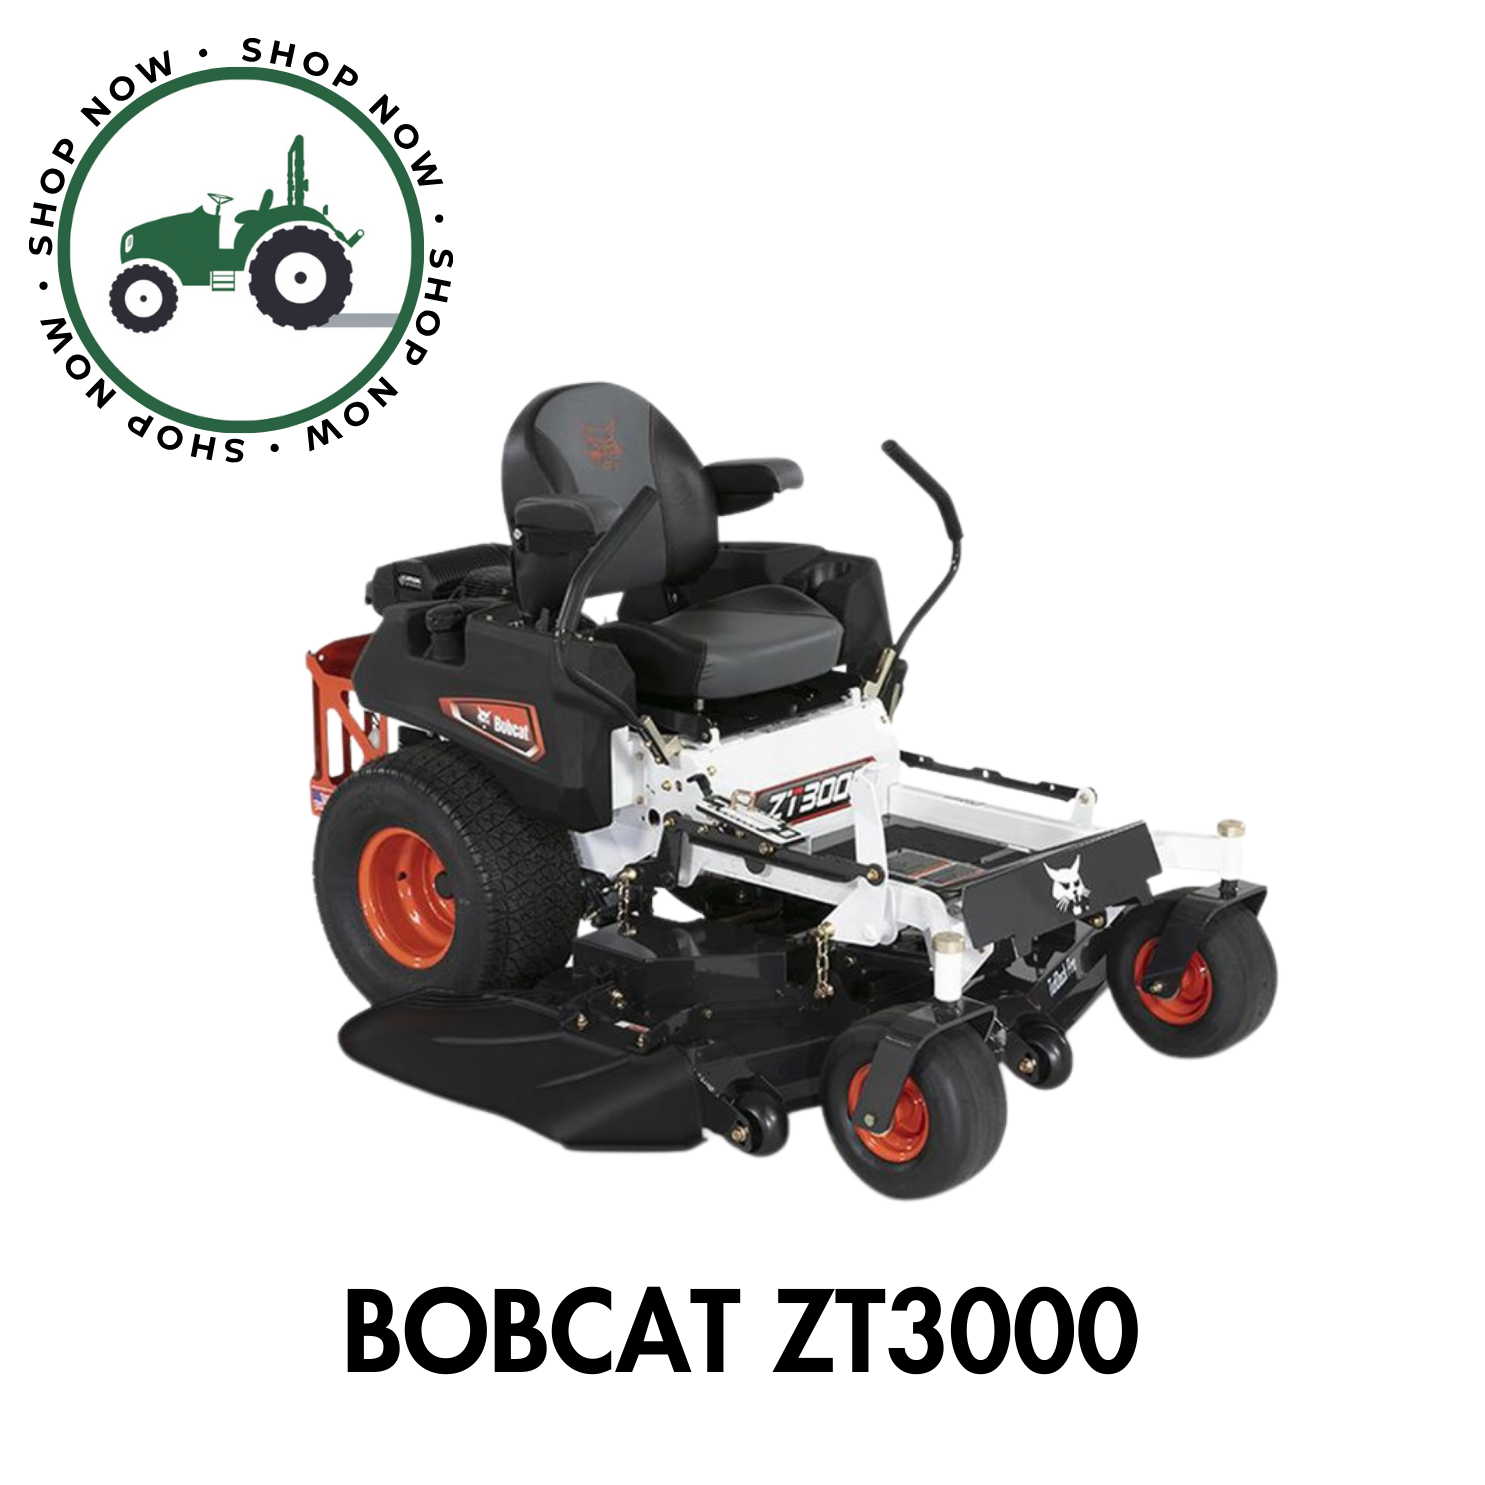 Bobcat ZT3000 Zero Turn Mower 52"